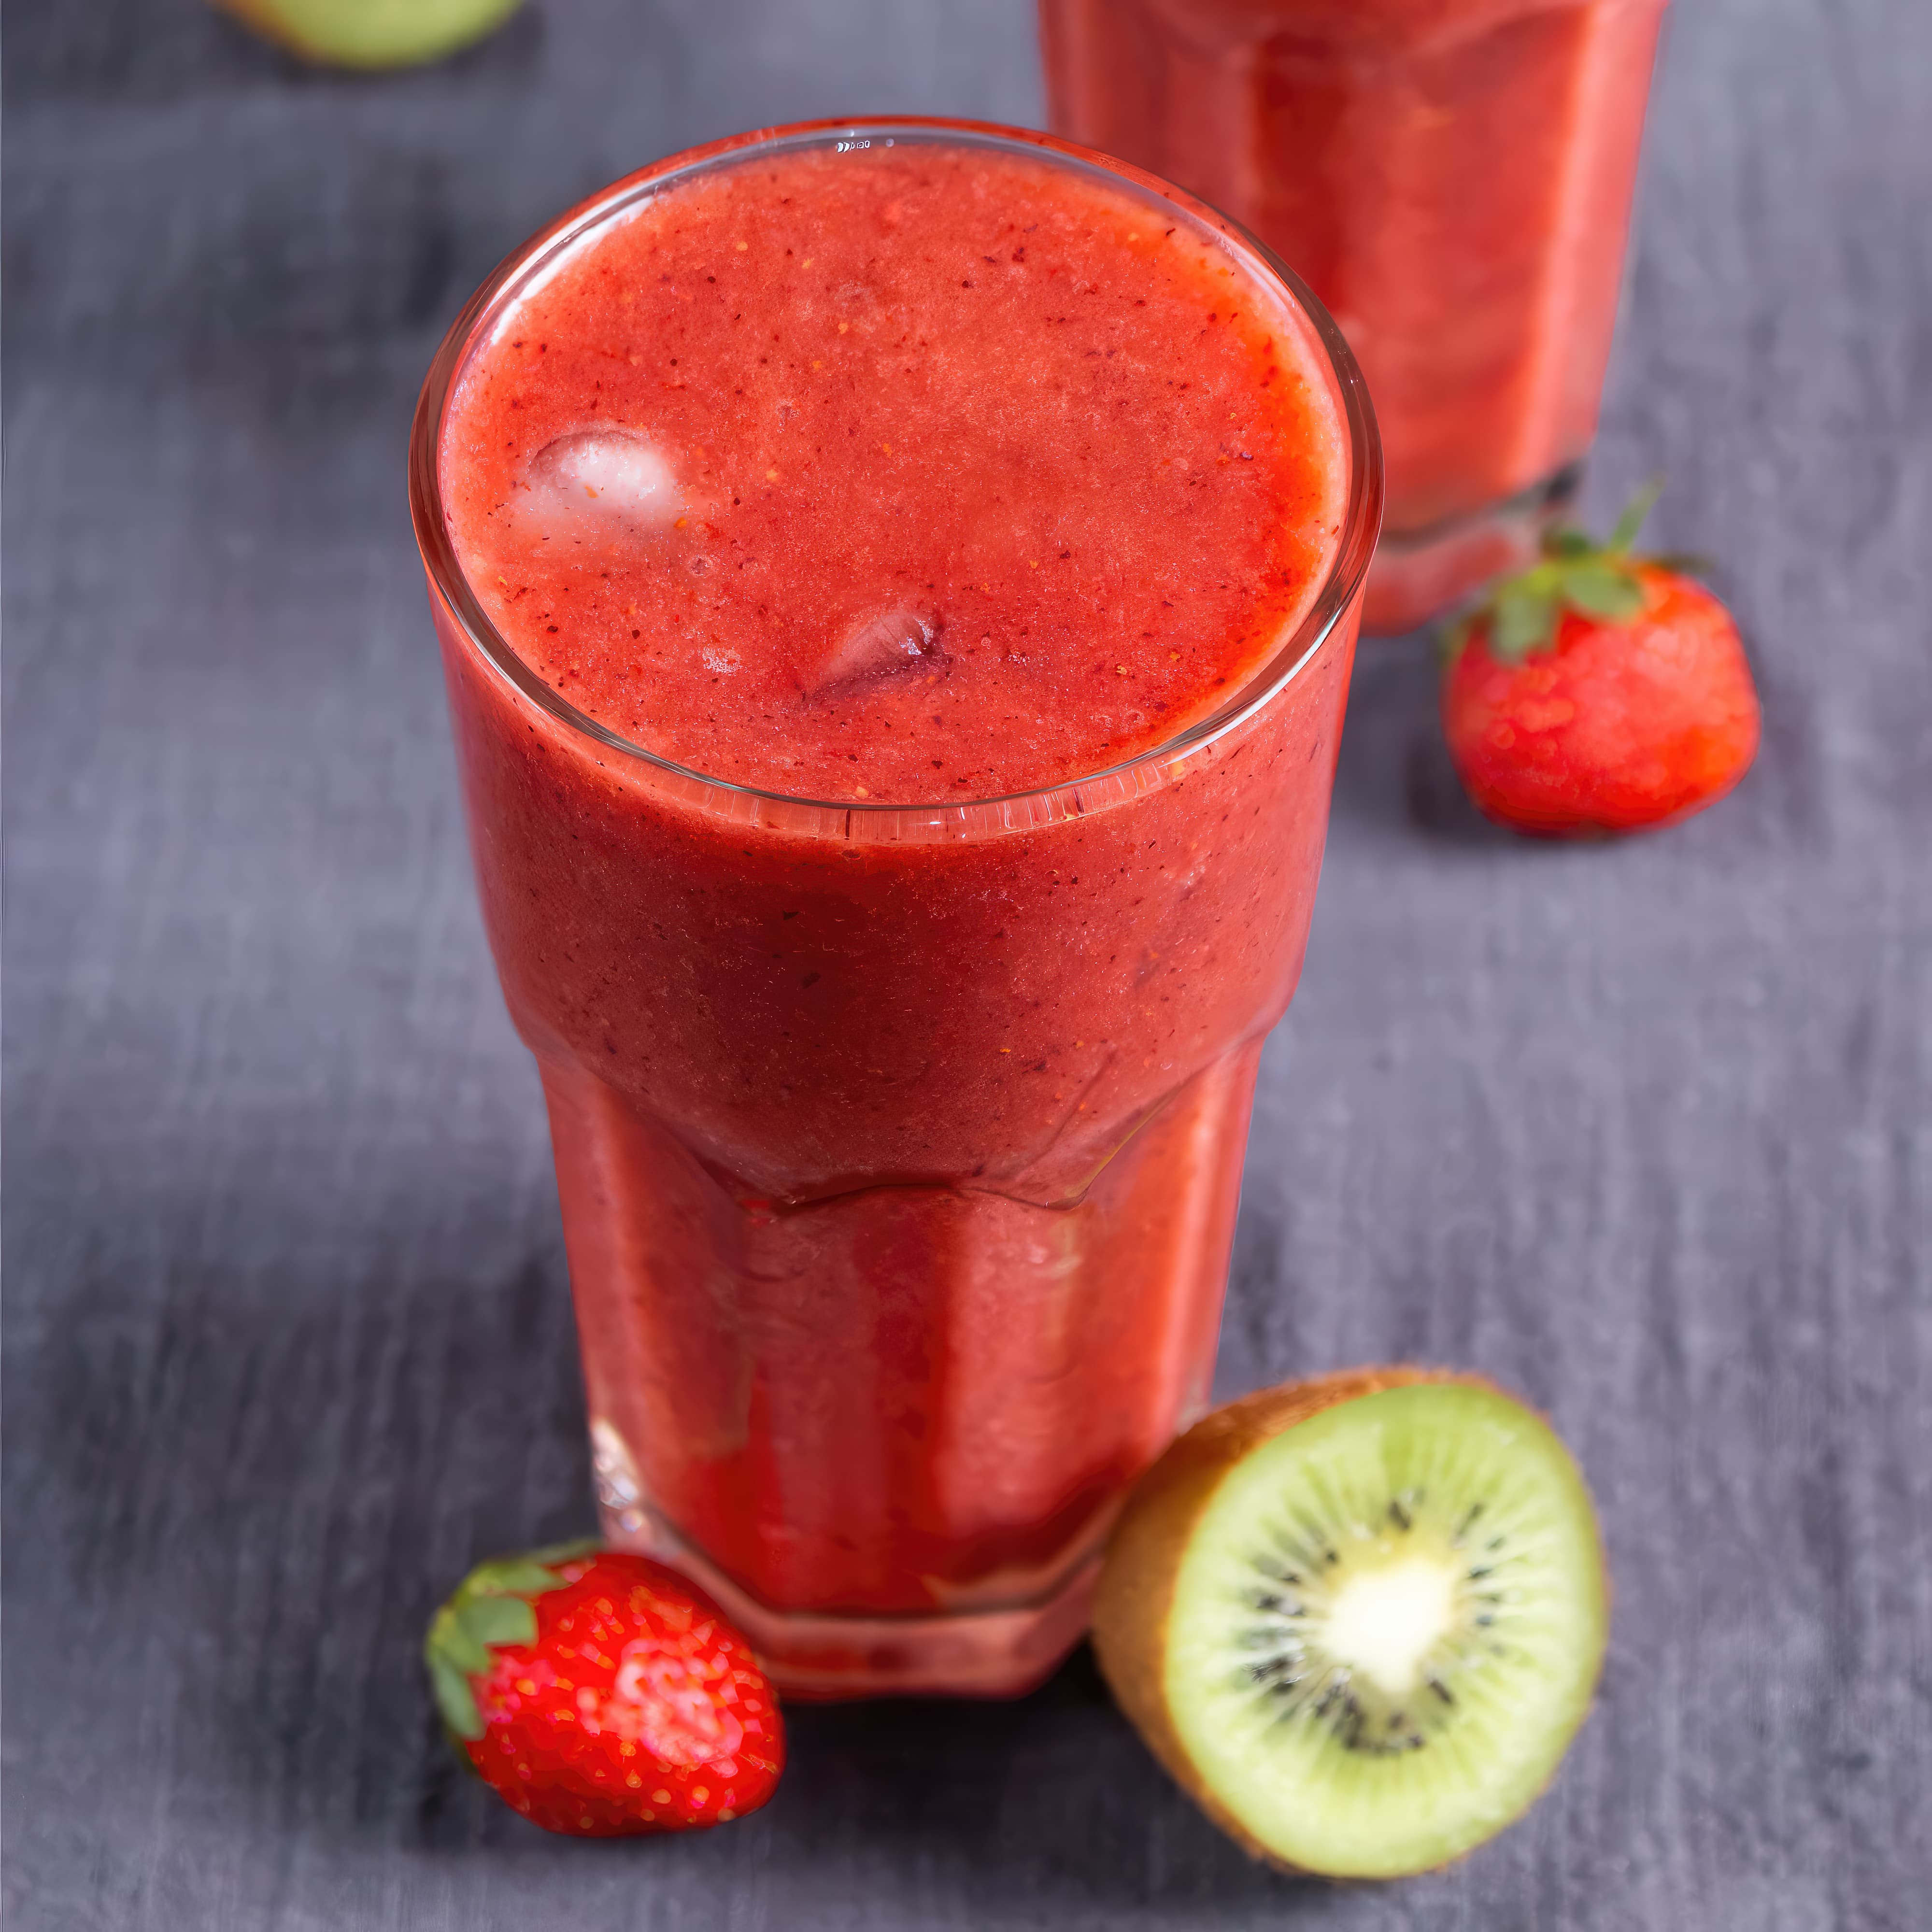 Image of strawberry kiwi juice